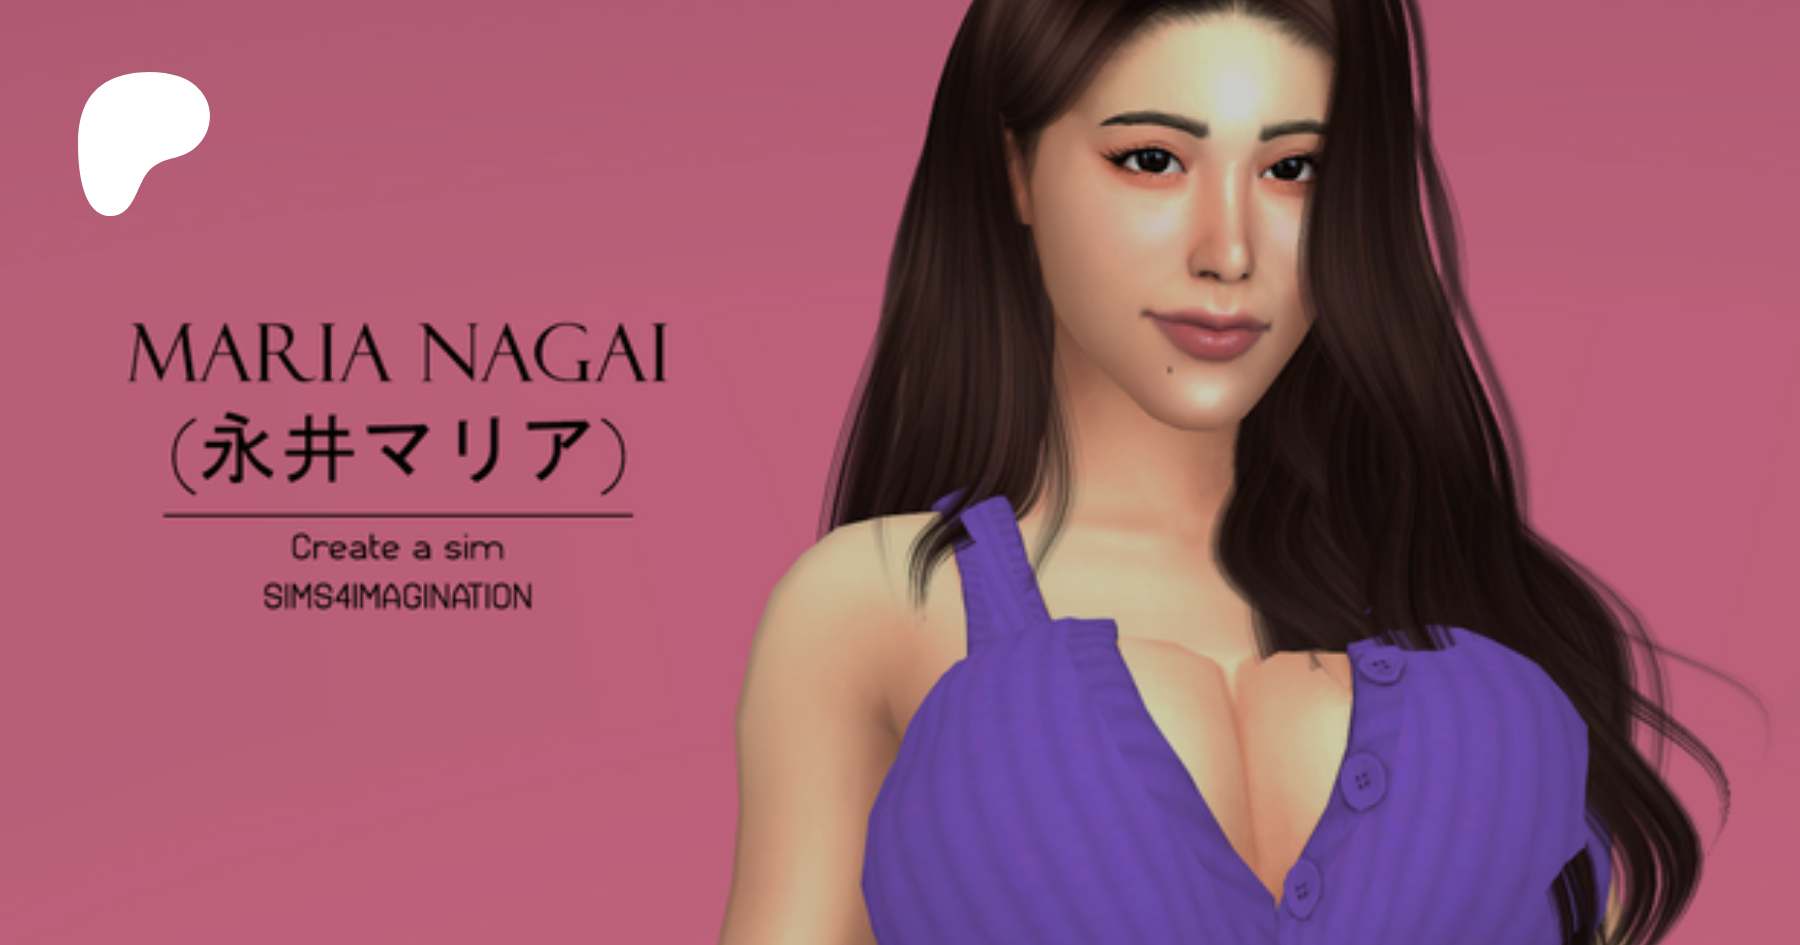 Sims 4 CAS: Maria Nagai (永井マリア) | Patreon